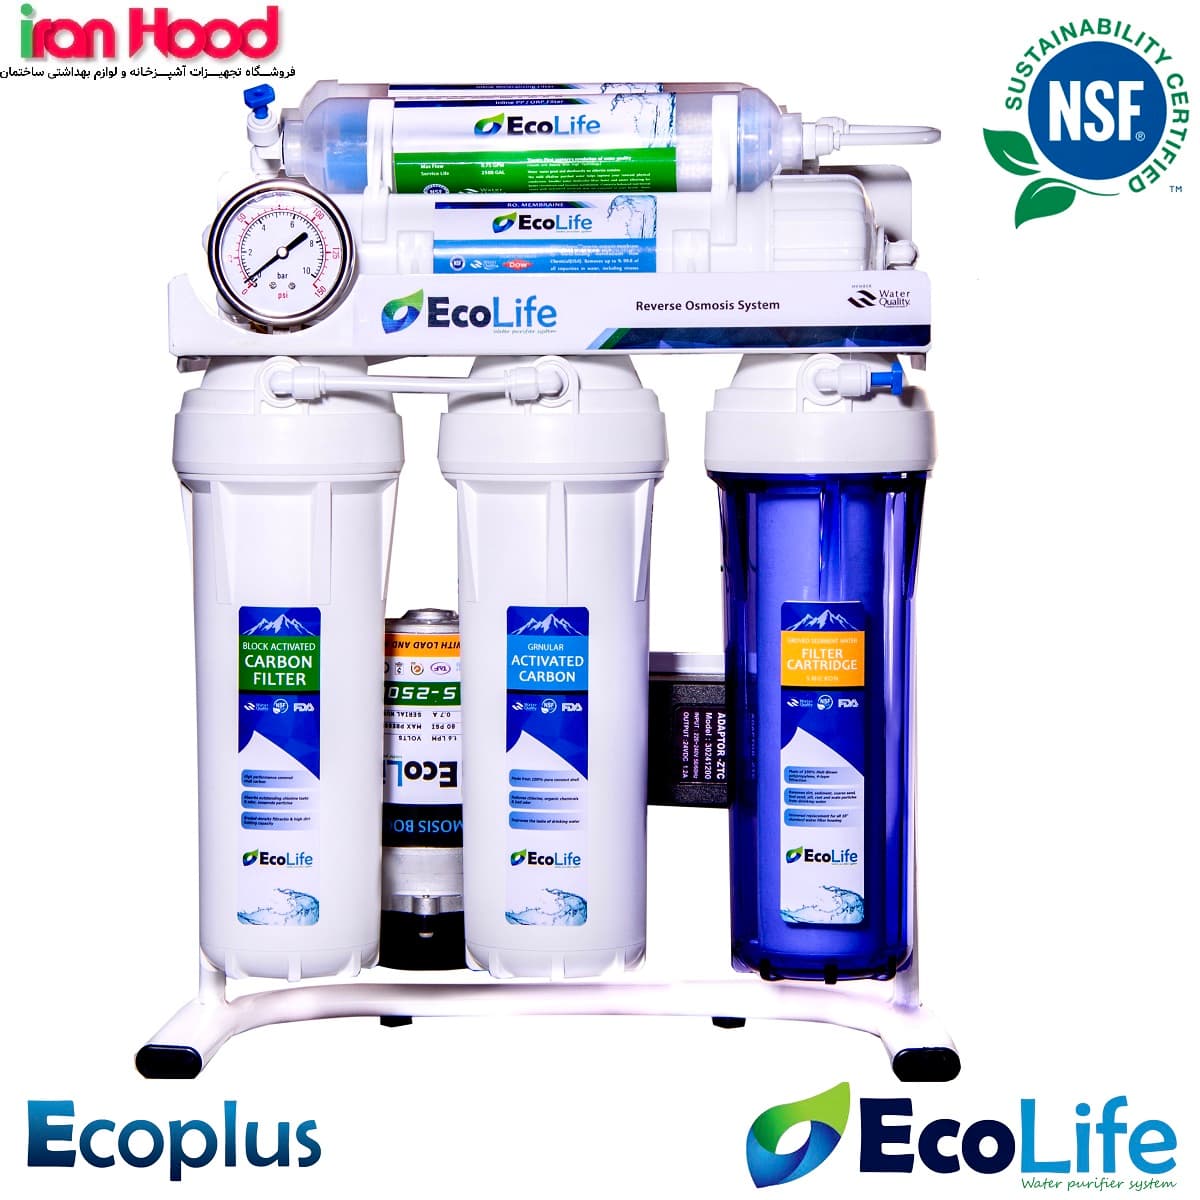 دستگاه تصفیه آب اکولایف مدل اکوپلاس EcoPlus